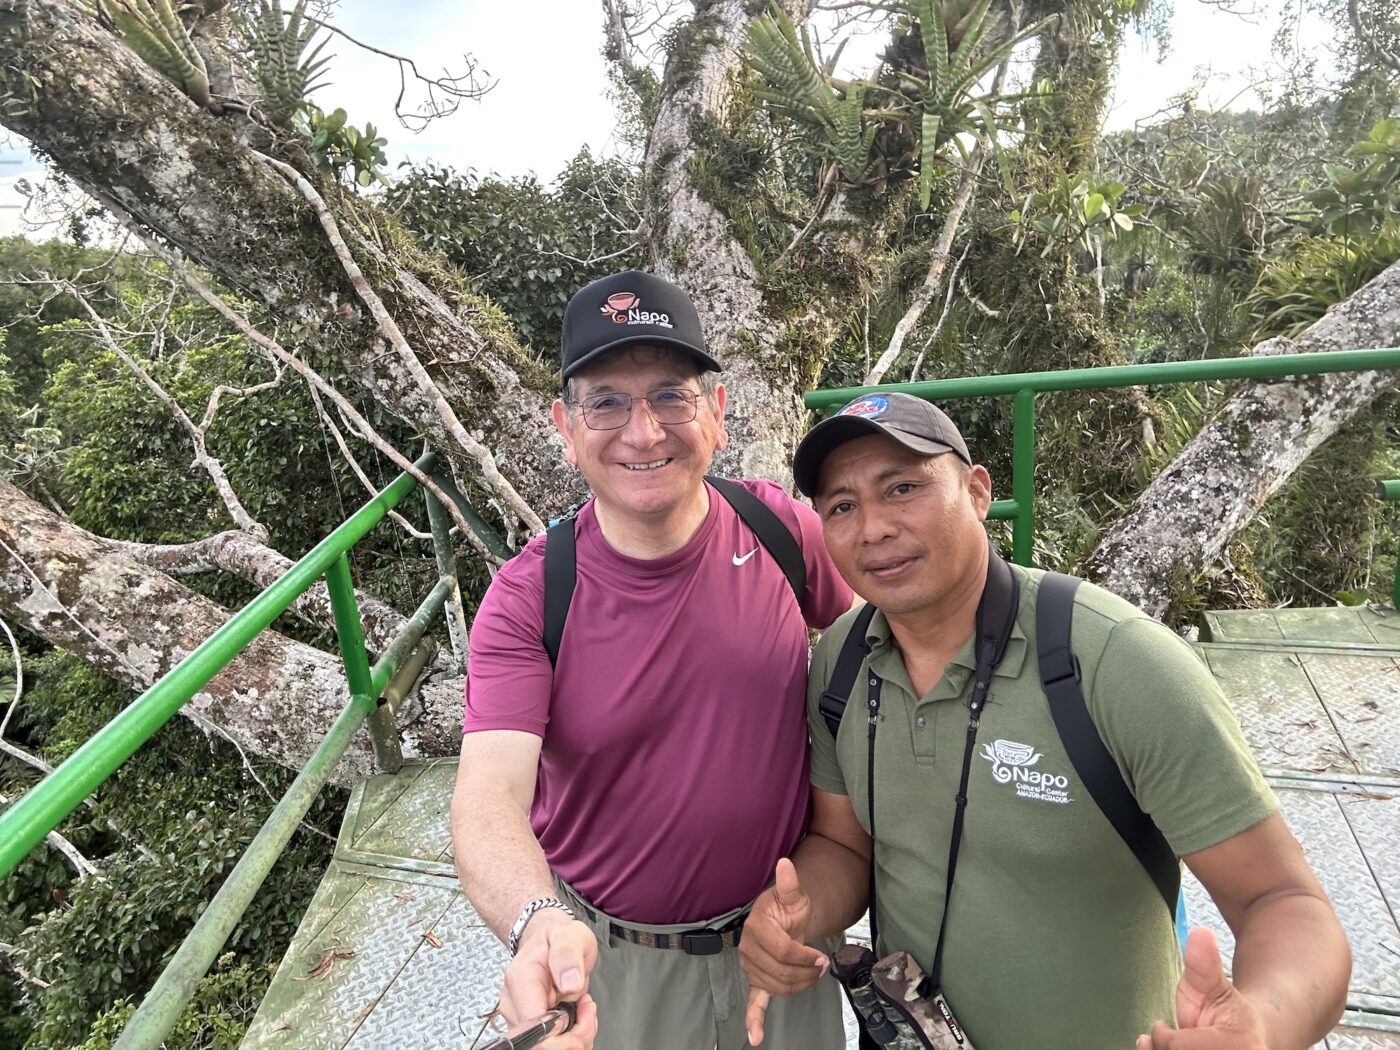 Dr. Fausto Sarmiento, a UGA professor, takes a selfie with a man in Ecuador.